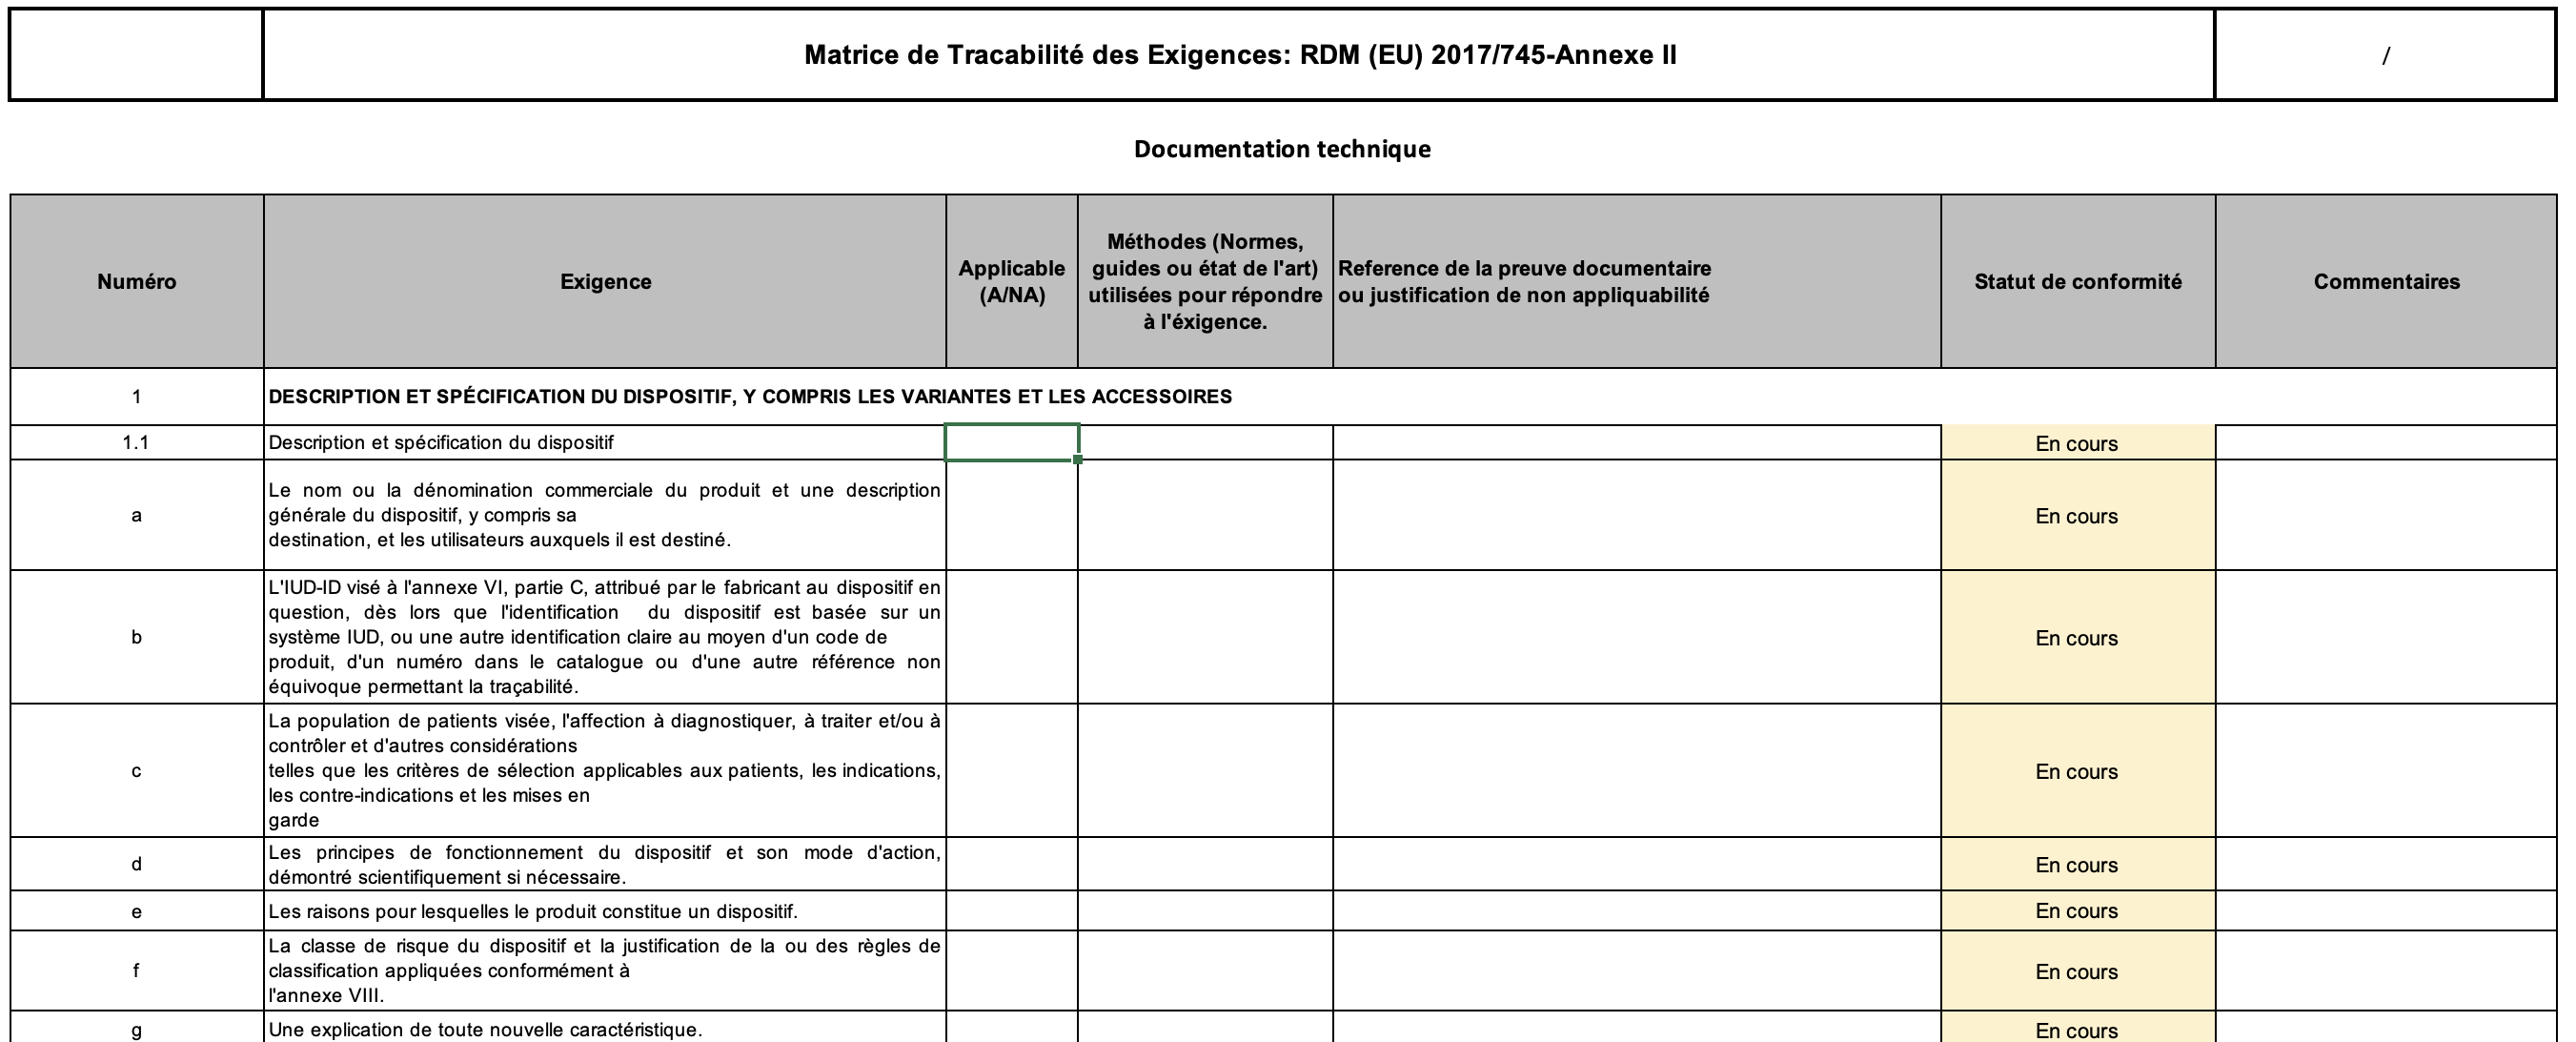 IDS197- Matrice de traçabilité des exigences du RDM EU 2017/745-Annexe II